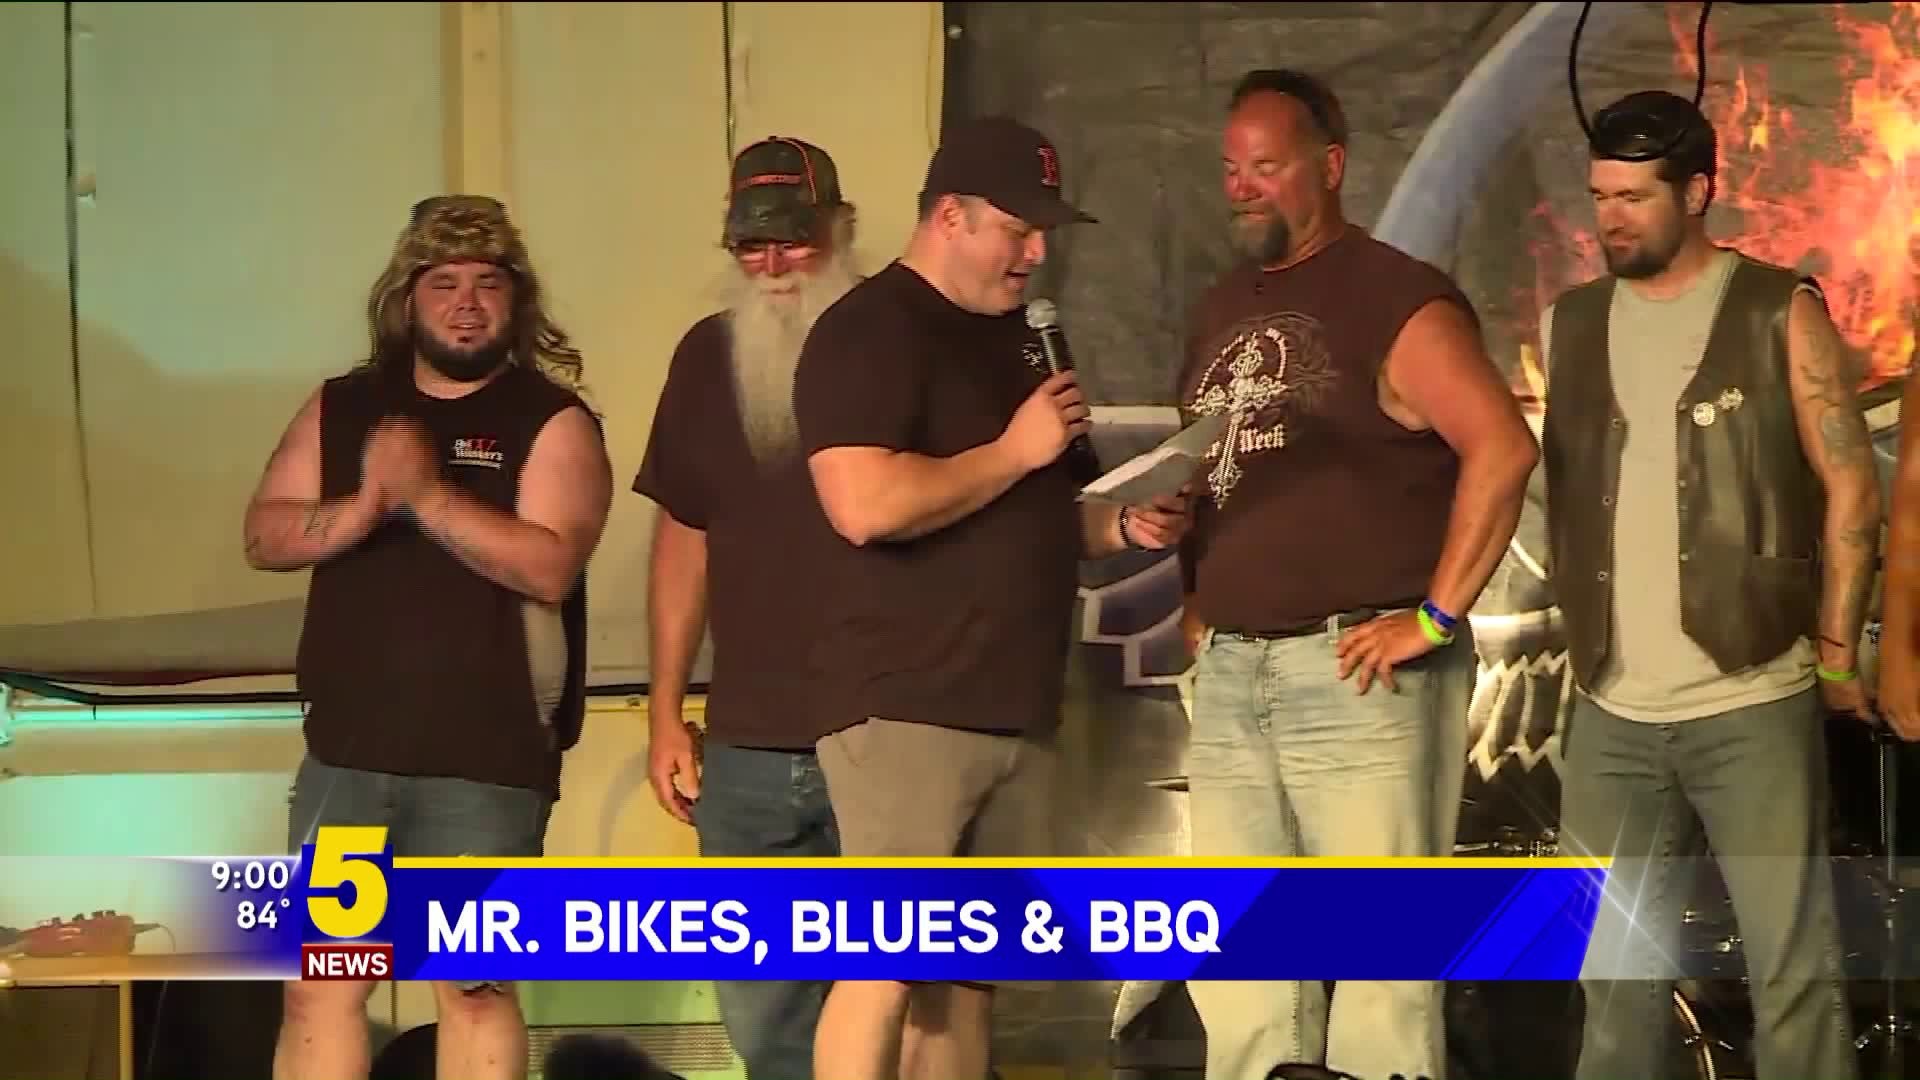 Mr. Bikes, Blues & BBQ